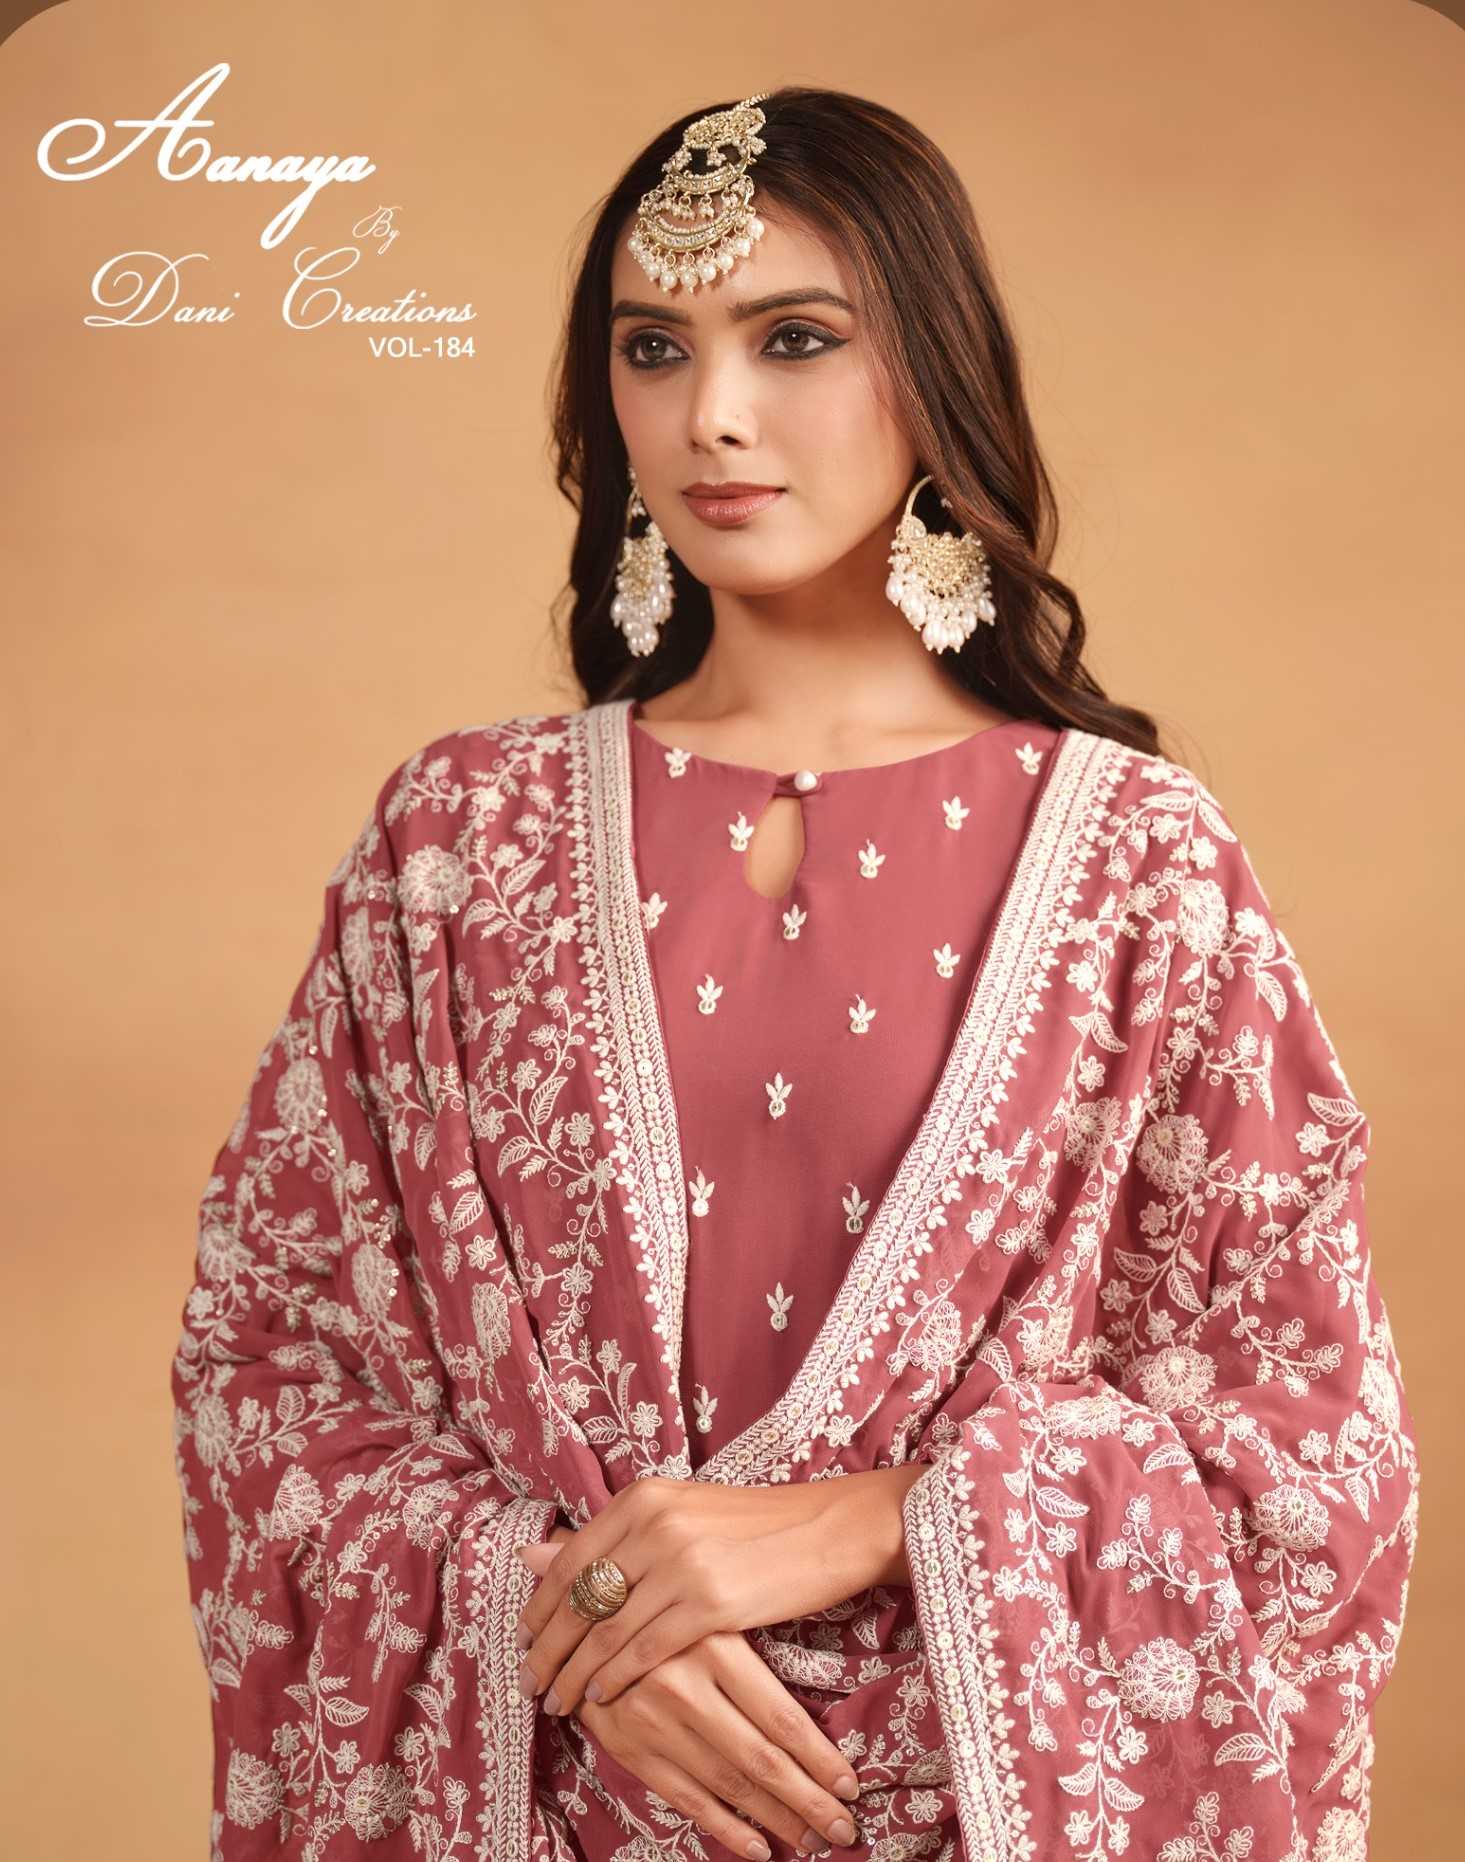 dani creation aanaya vol 184 designer occasion wear unstitch salwar kameez